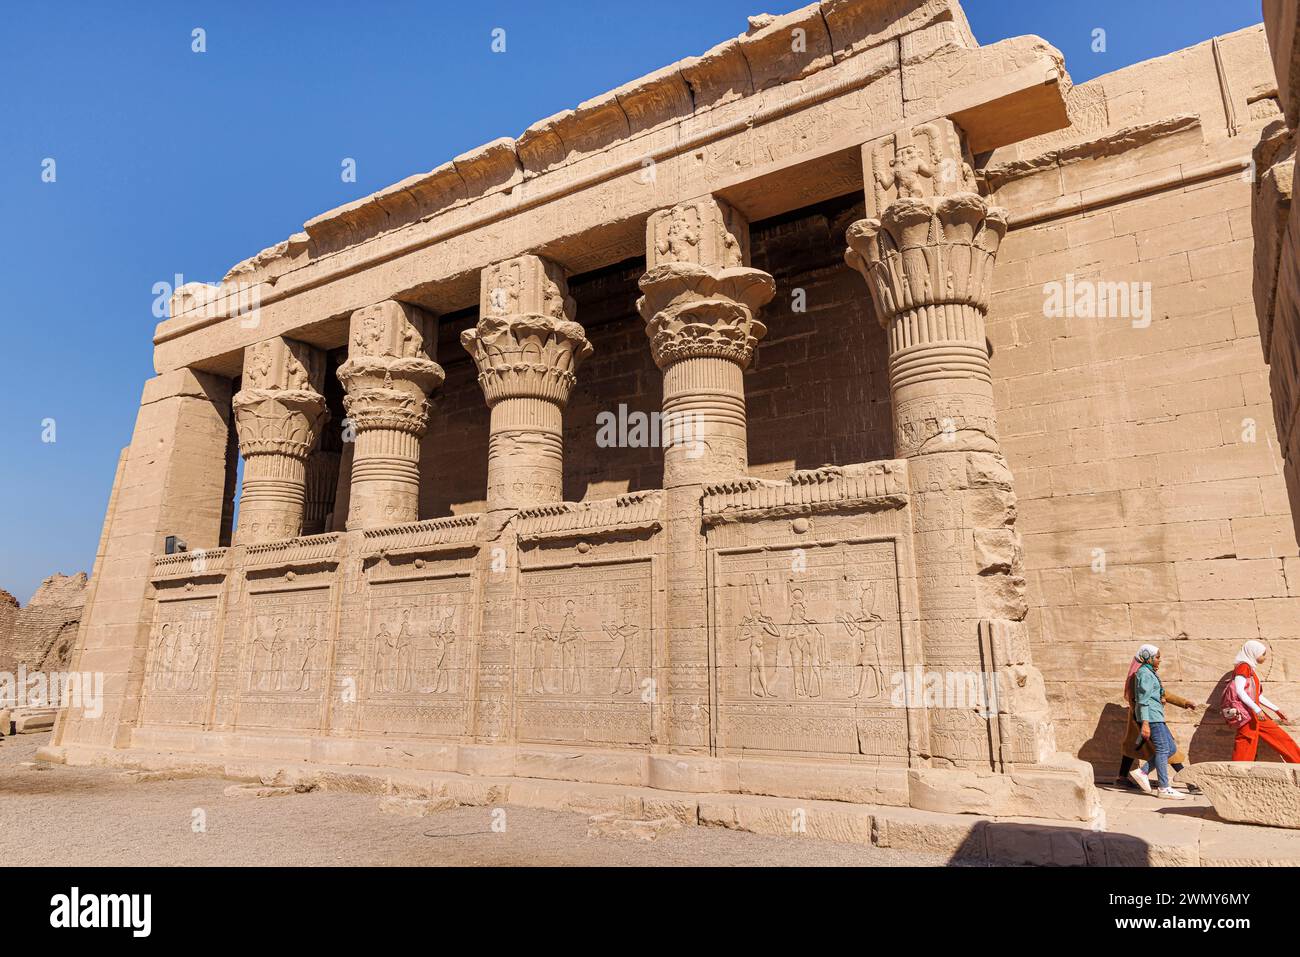 Ägypten, Qena, Dendera, Pharaonentempel in Oberägypten aus ptolemäischer und römischer Zeit, die von der UNESCO, roman mammisi, zum Weltkulturerbe erklärt wurden Stockfoto